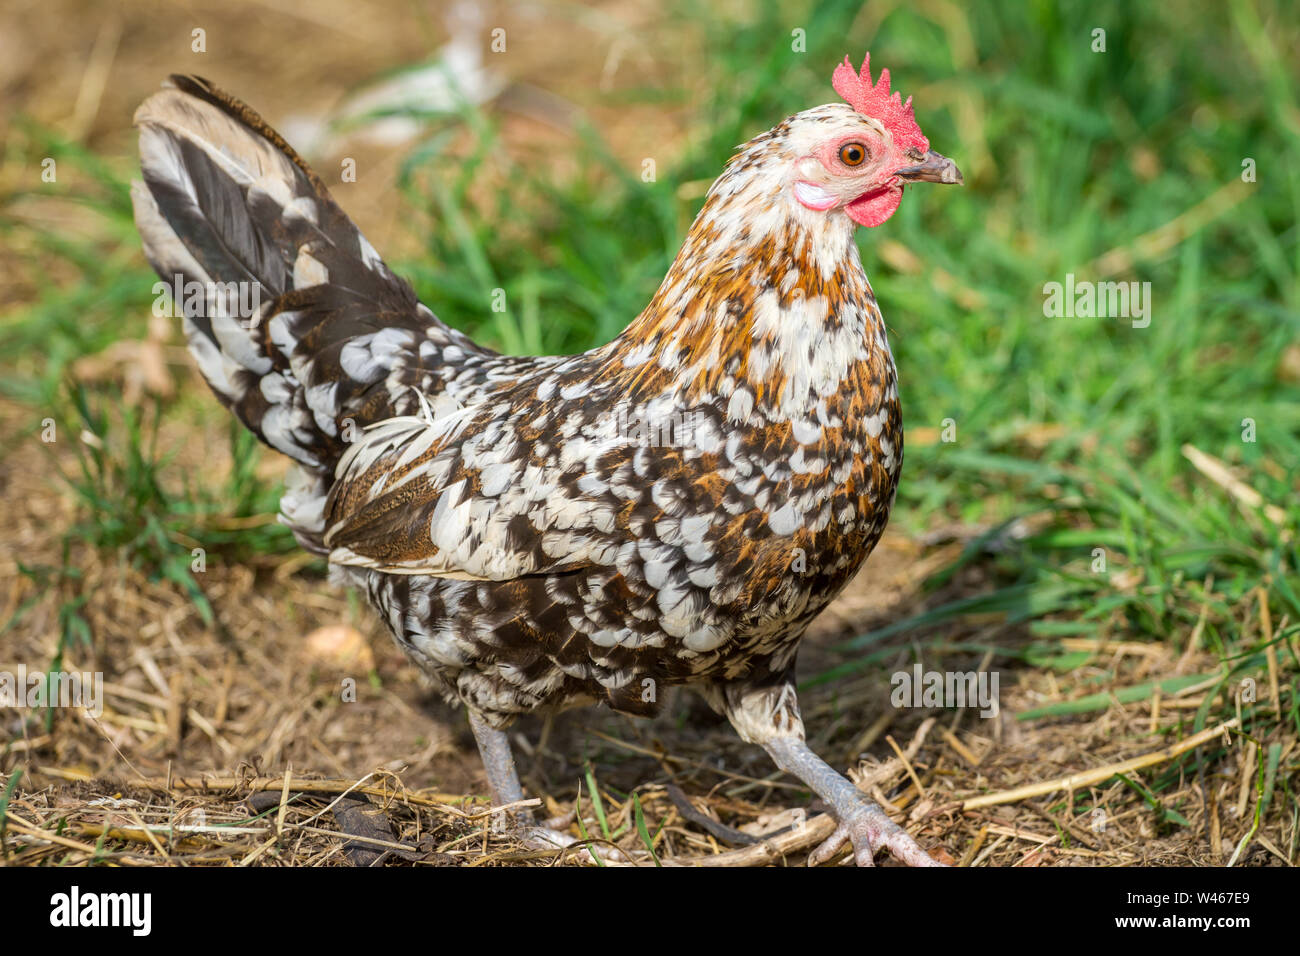 Free Range Huhn (Stoapiperl/Steinhendl, einer vom Aussterben bedrohten Rasse Huhn aus Österreich) Stockfoto